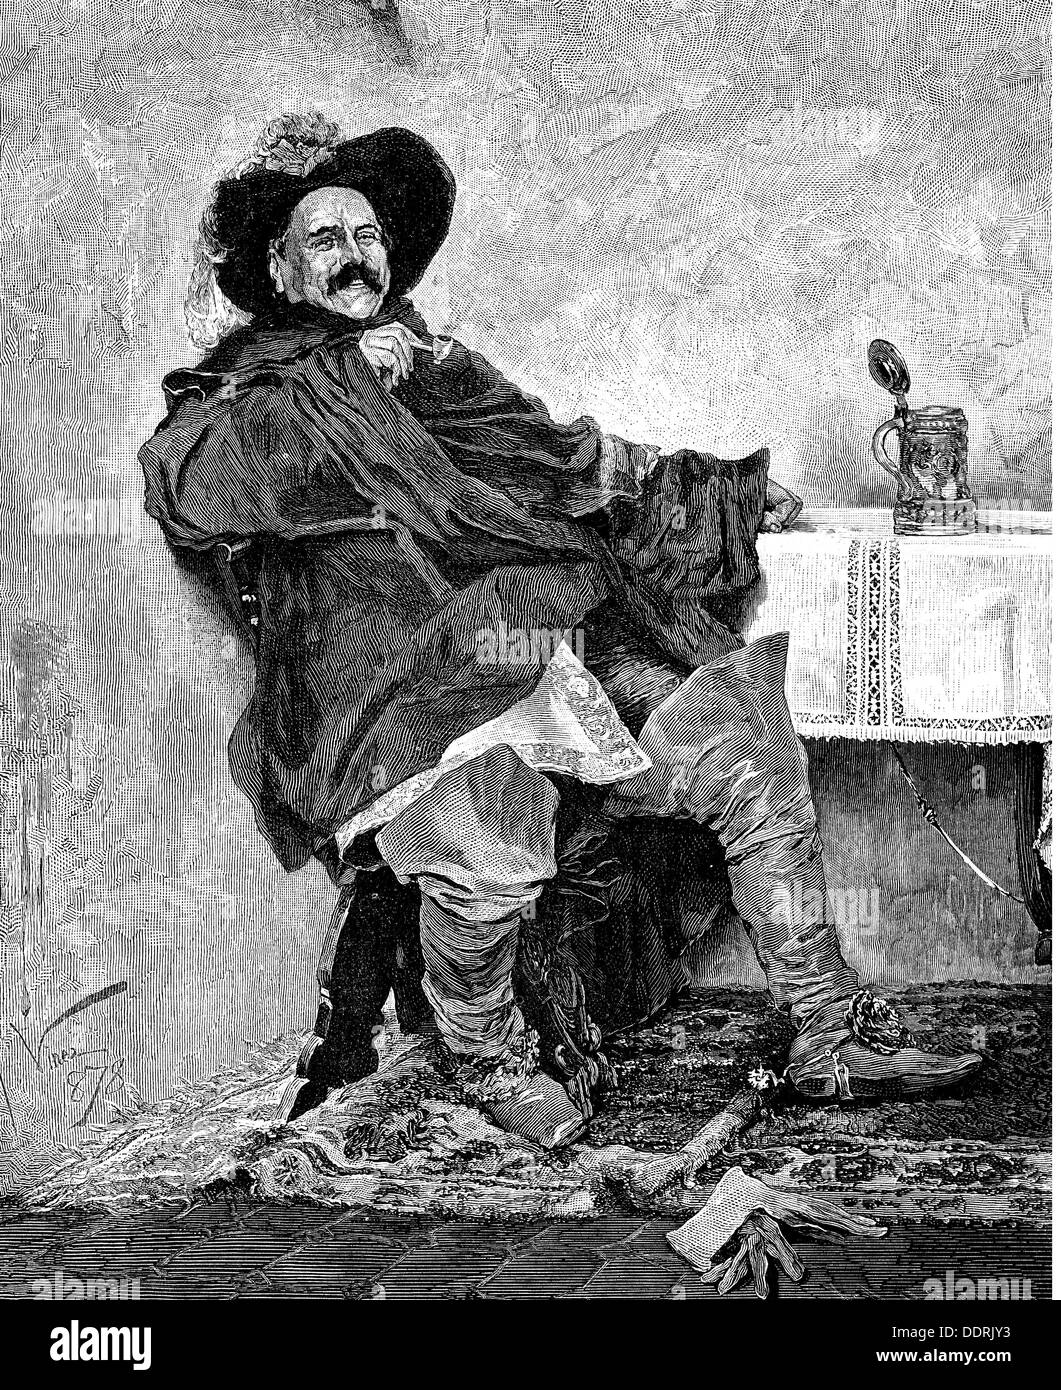 Littérature, poème, 'Capitano Molena', après peinture par Francesco Vinea (1845 - 1902), 1878, gravure sur bois, fin du XIXe siècle, droits additionnels-Clearences-non disponible Banque D'Images